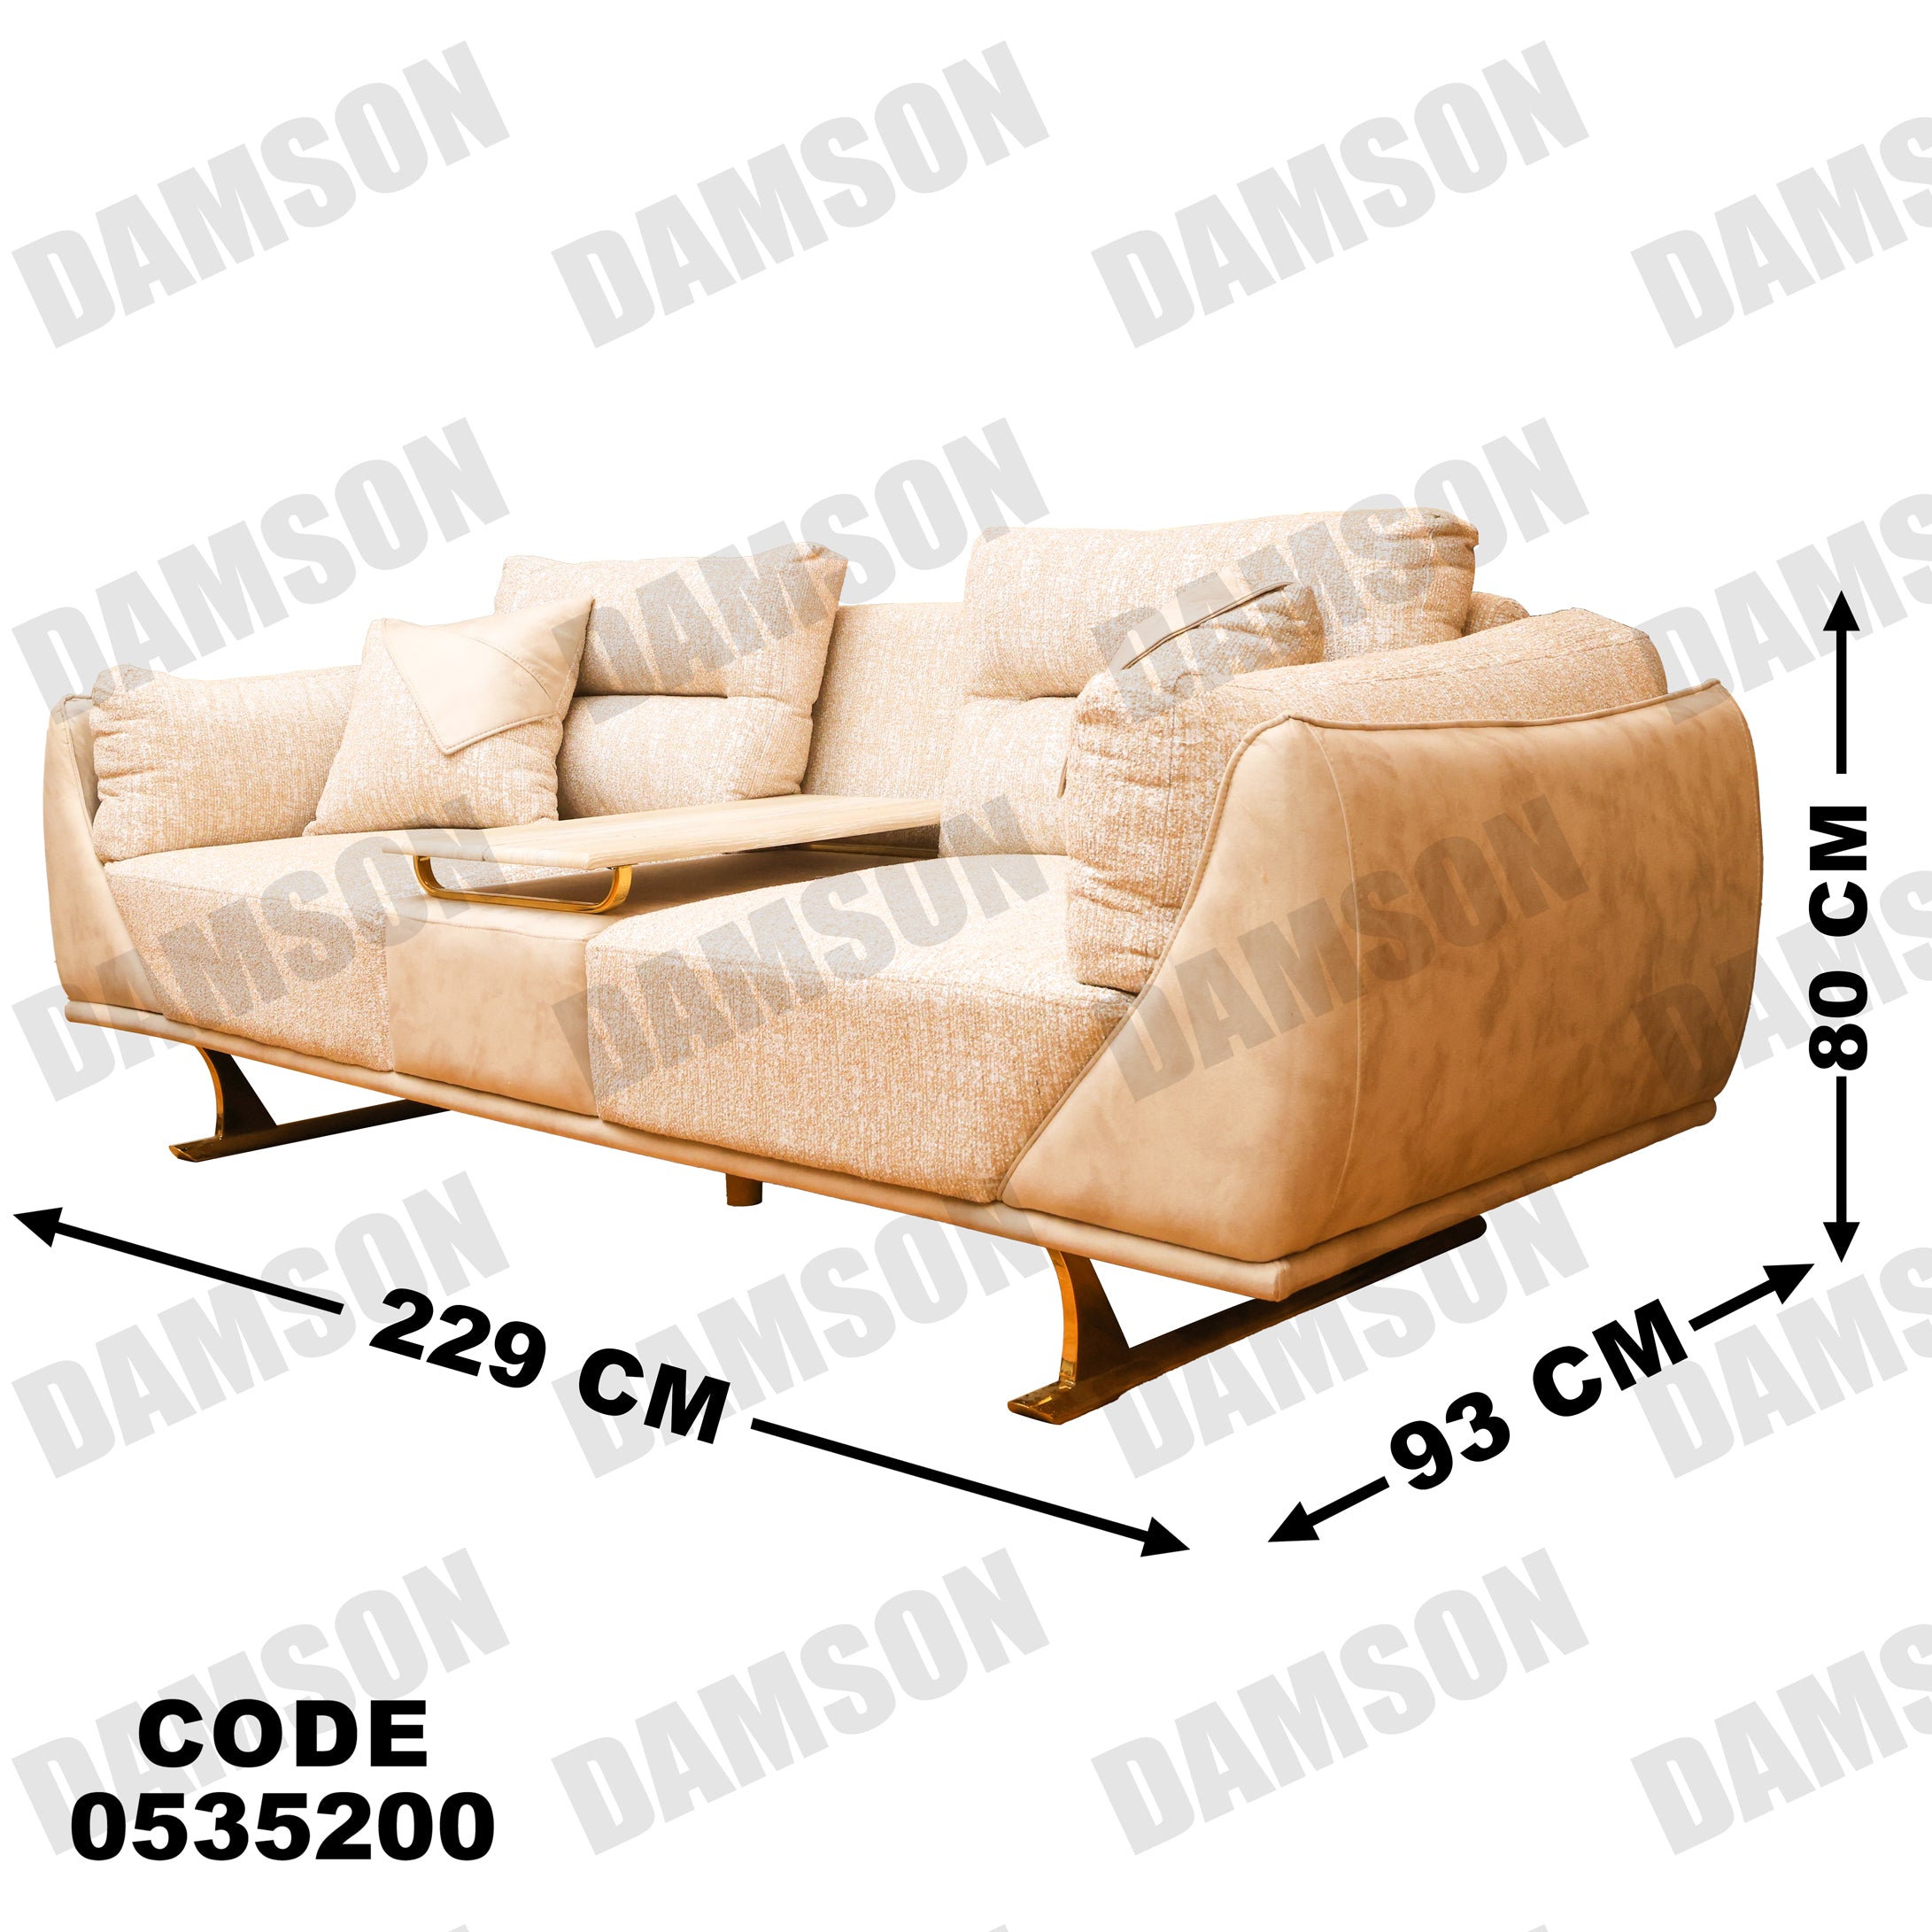 انترية 352 - Damson Furnitureانترية 352